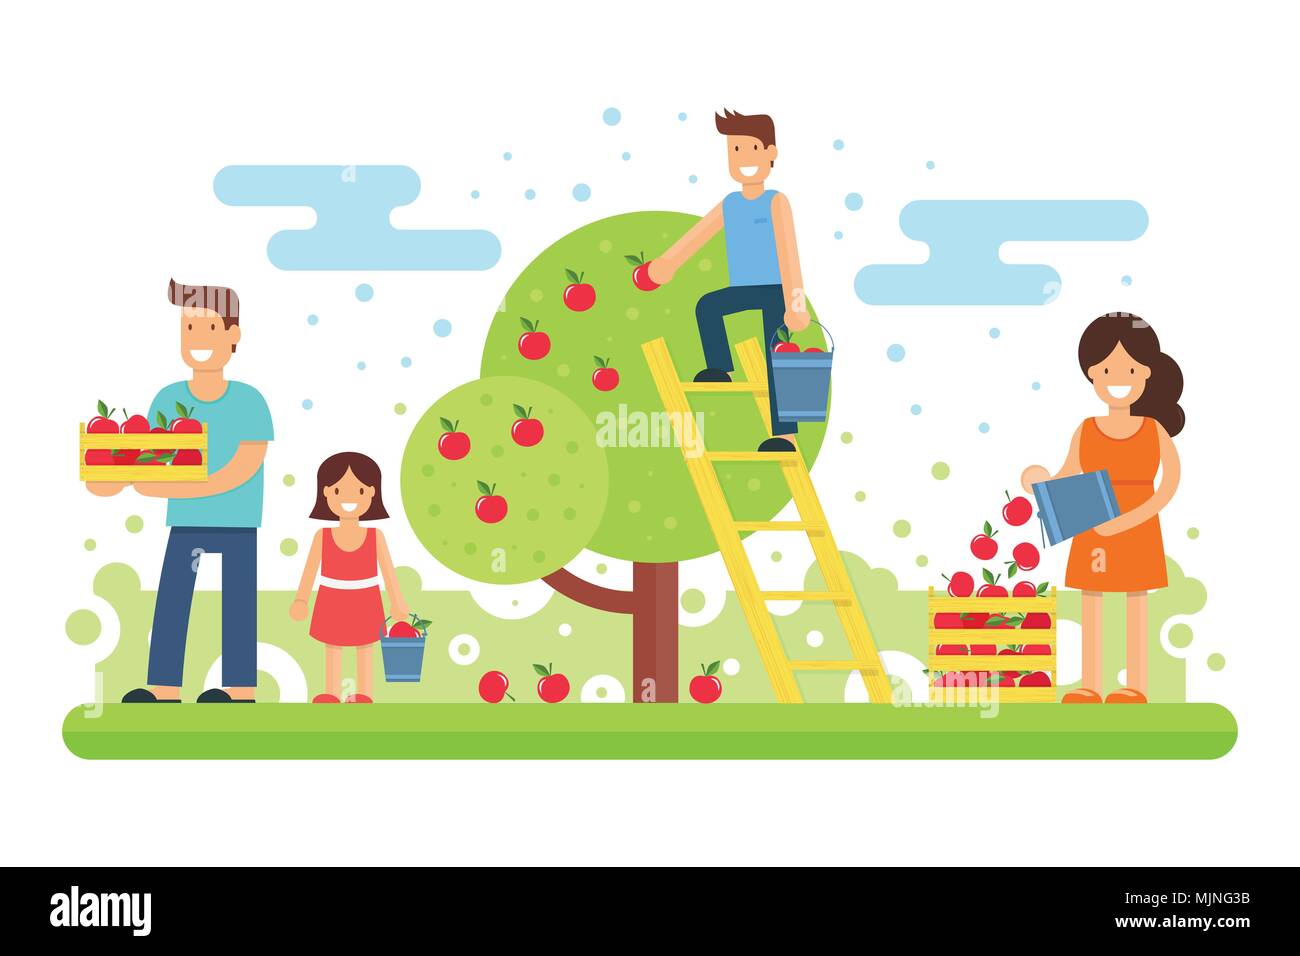 Une famille heureuse recueille des récoltes de pommes. Le père, la mère, le fils et le plus jeune fille sont la collecte des pommes dans le jardin. Vector illustration. Wor mixte Illustration de Vecteur